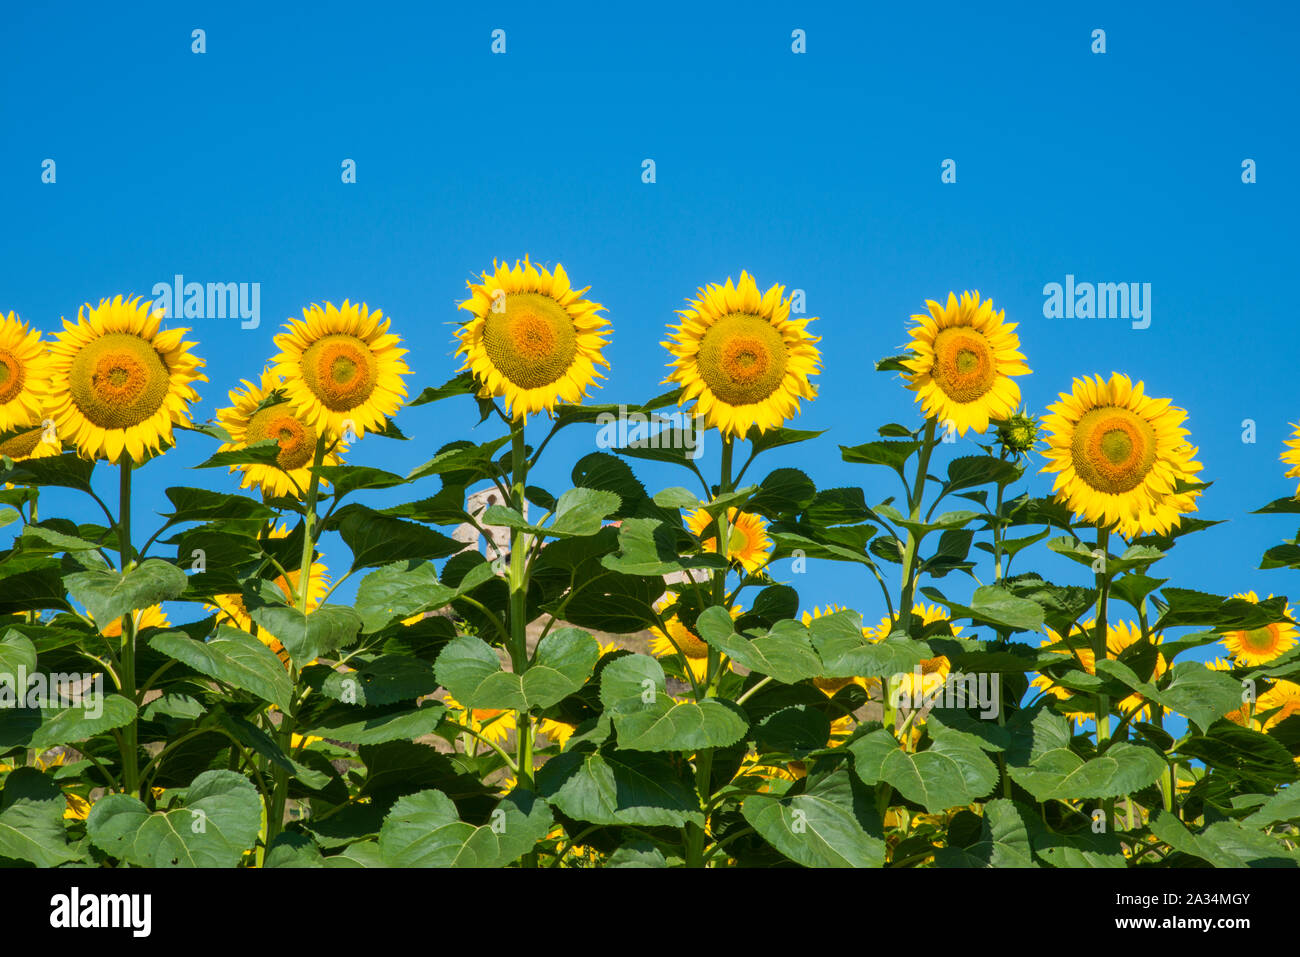 Sunflowers. Stock Photo